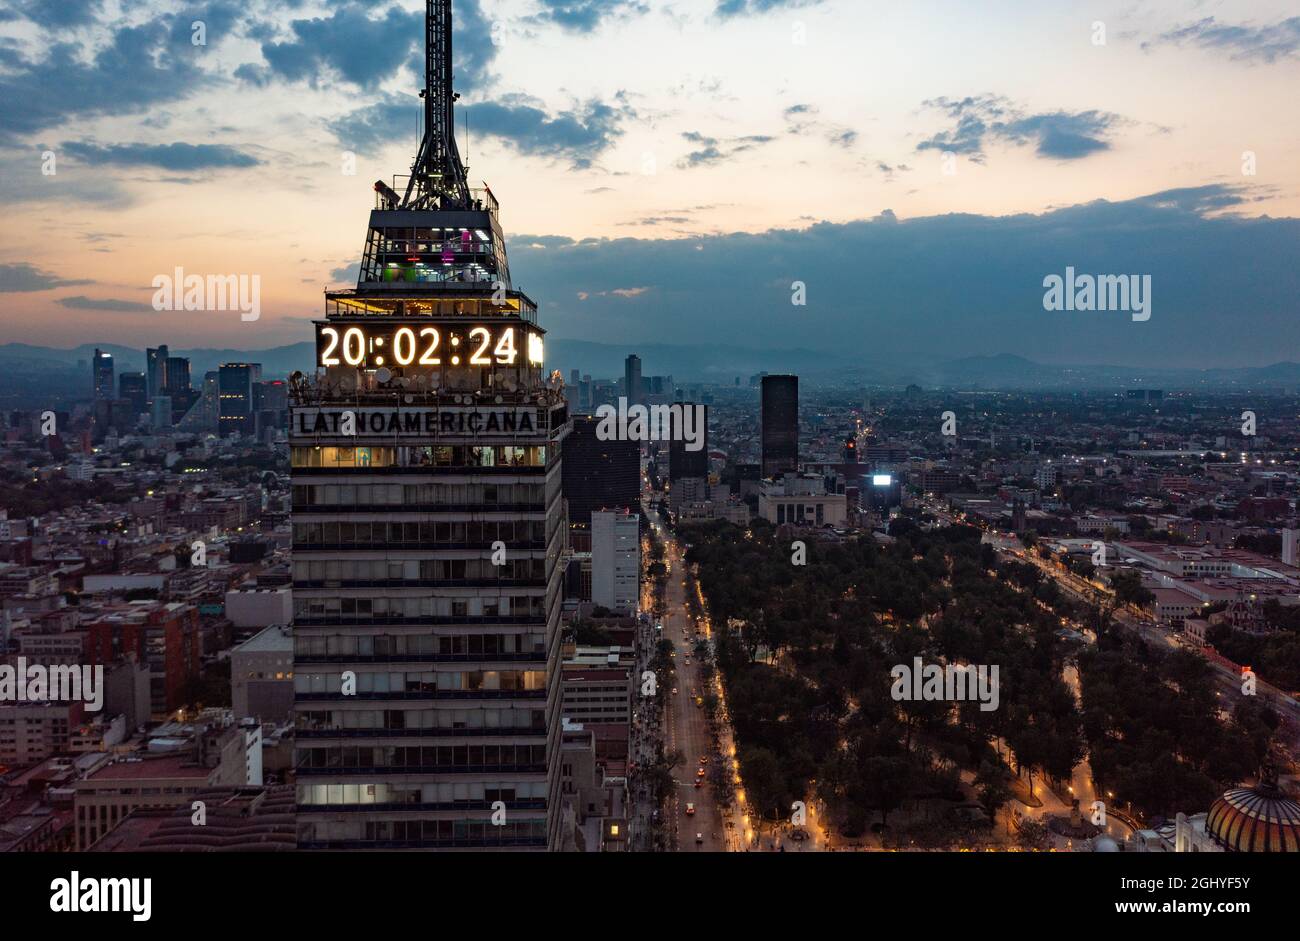 Luftaufnahme von Finanzhochhäusern, die die Zeit auf digitaler Uhr in der Nacht in Mexiko-Stadt unter bewölktem Himmel anzeigen Stockfoto